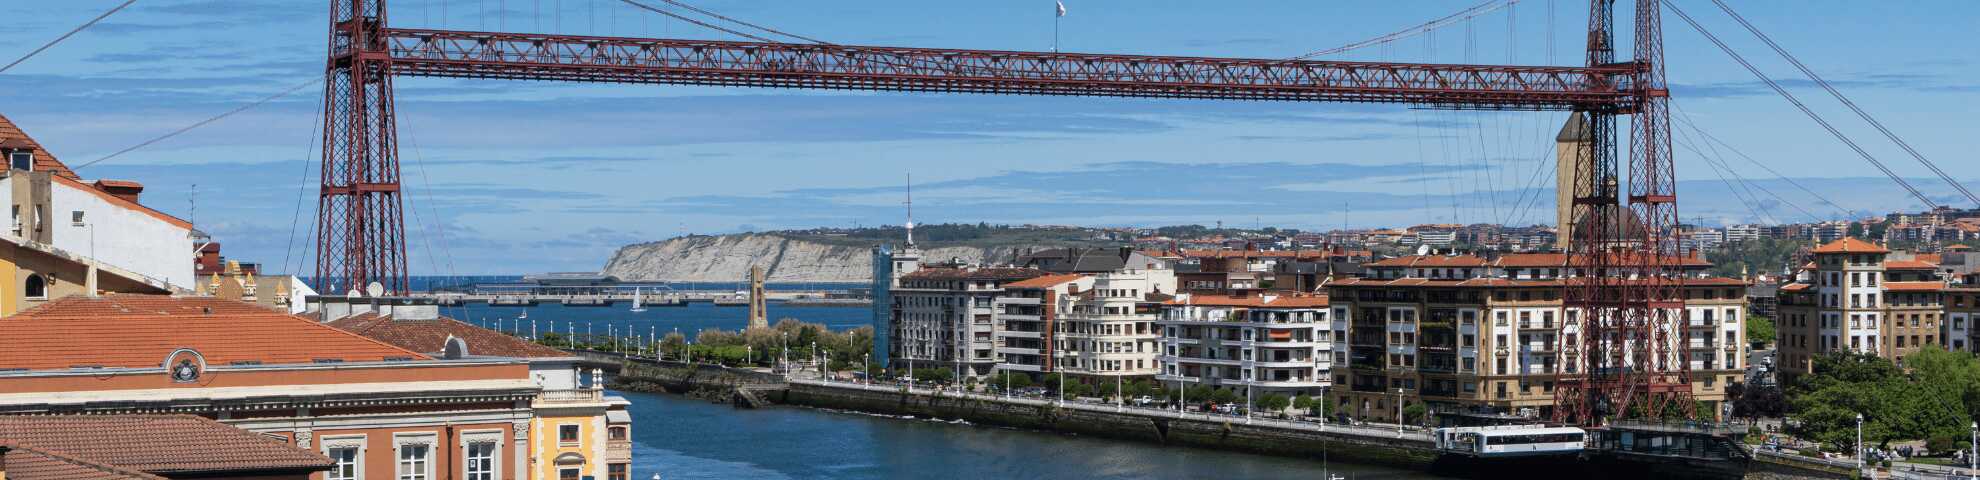 Puente Vizcaya / Portugalete